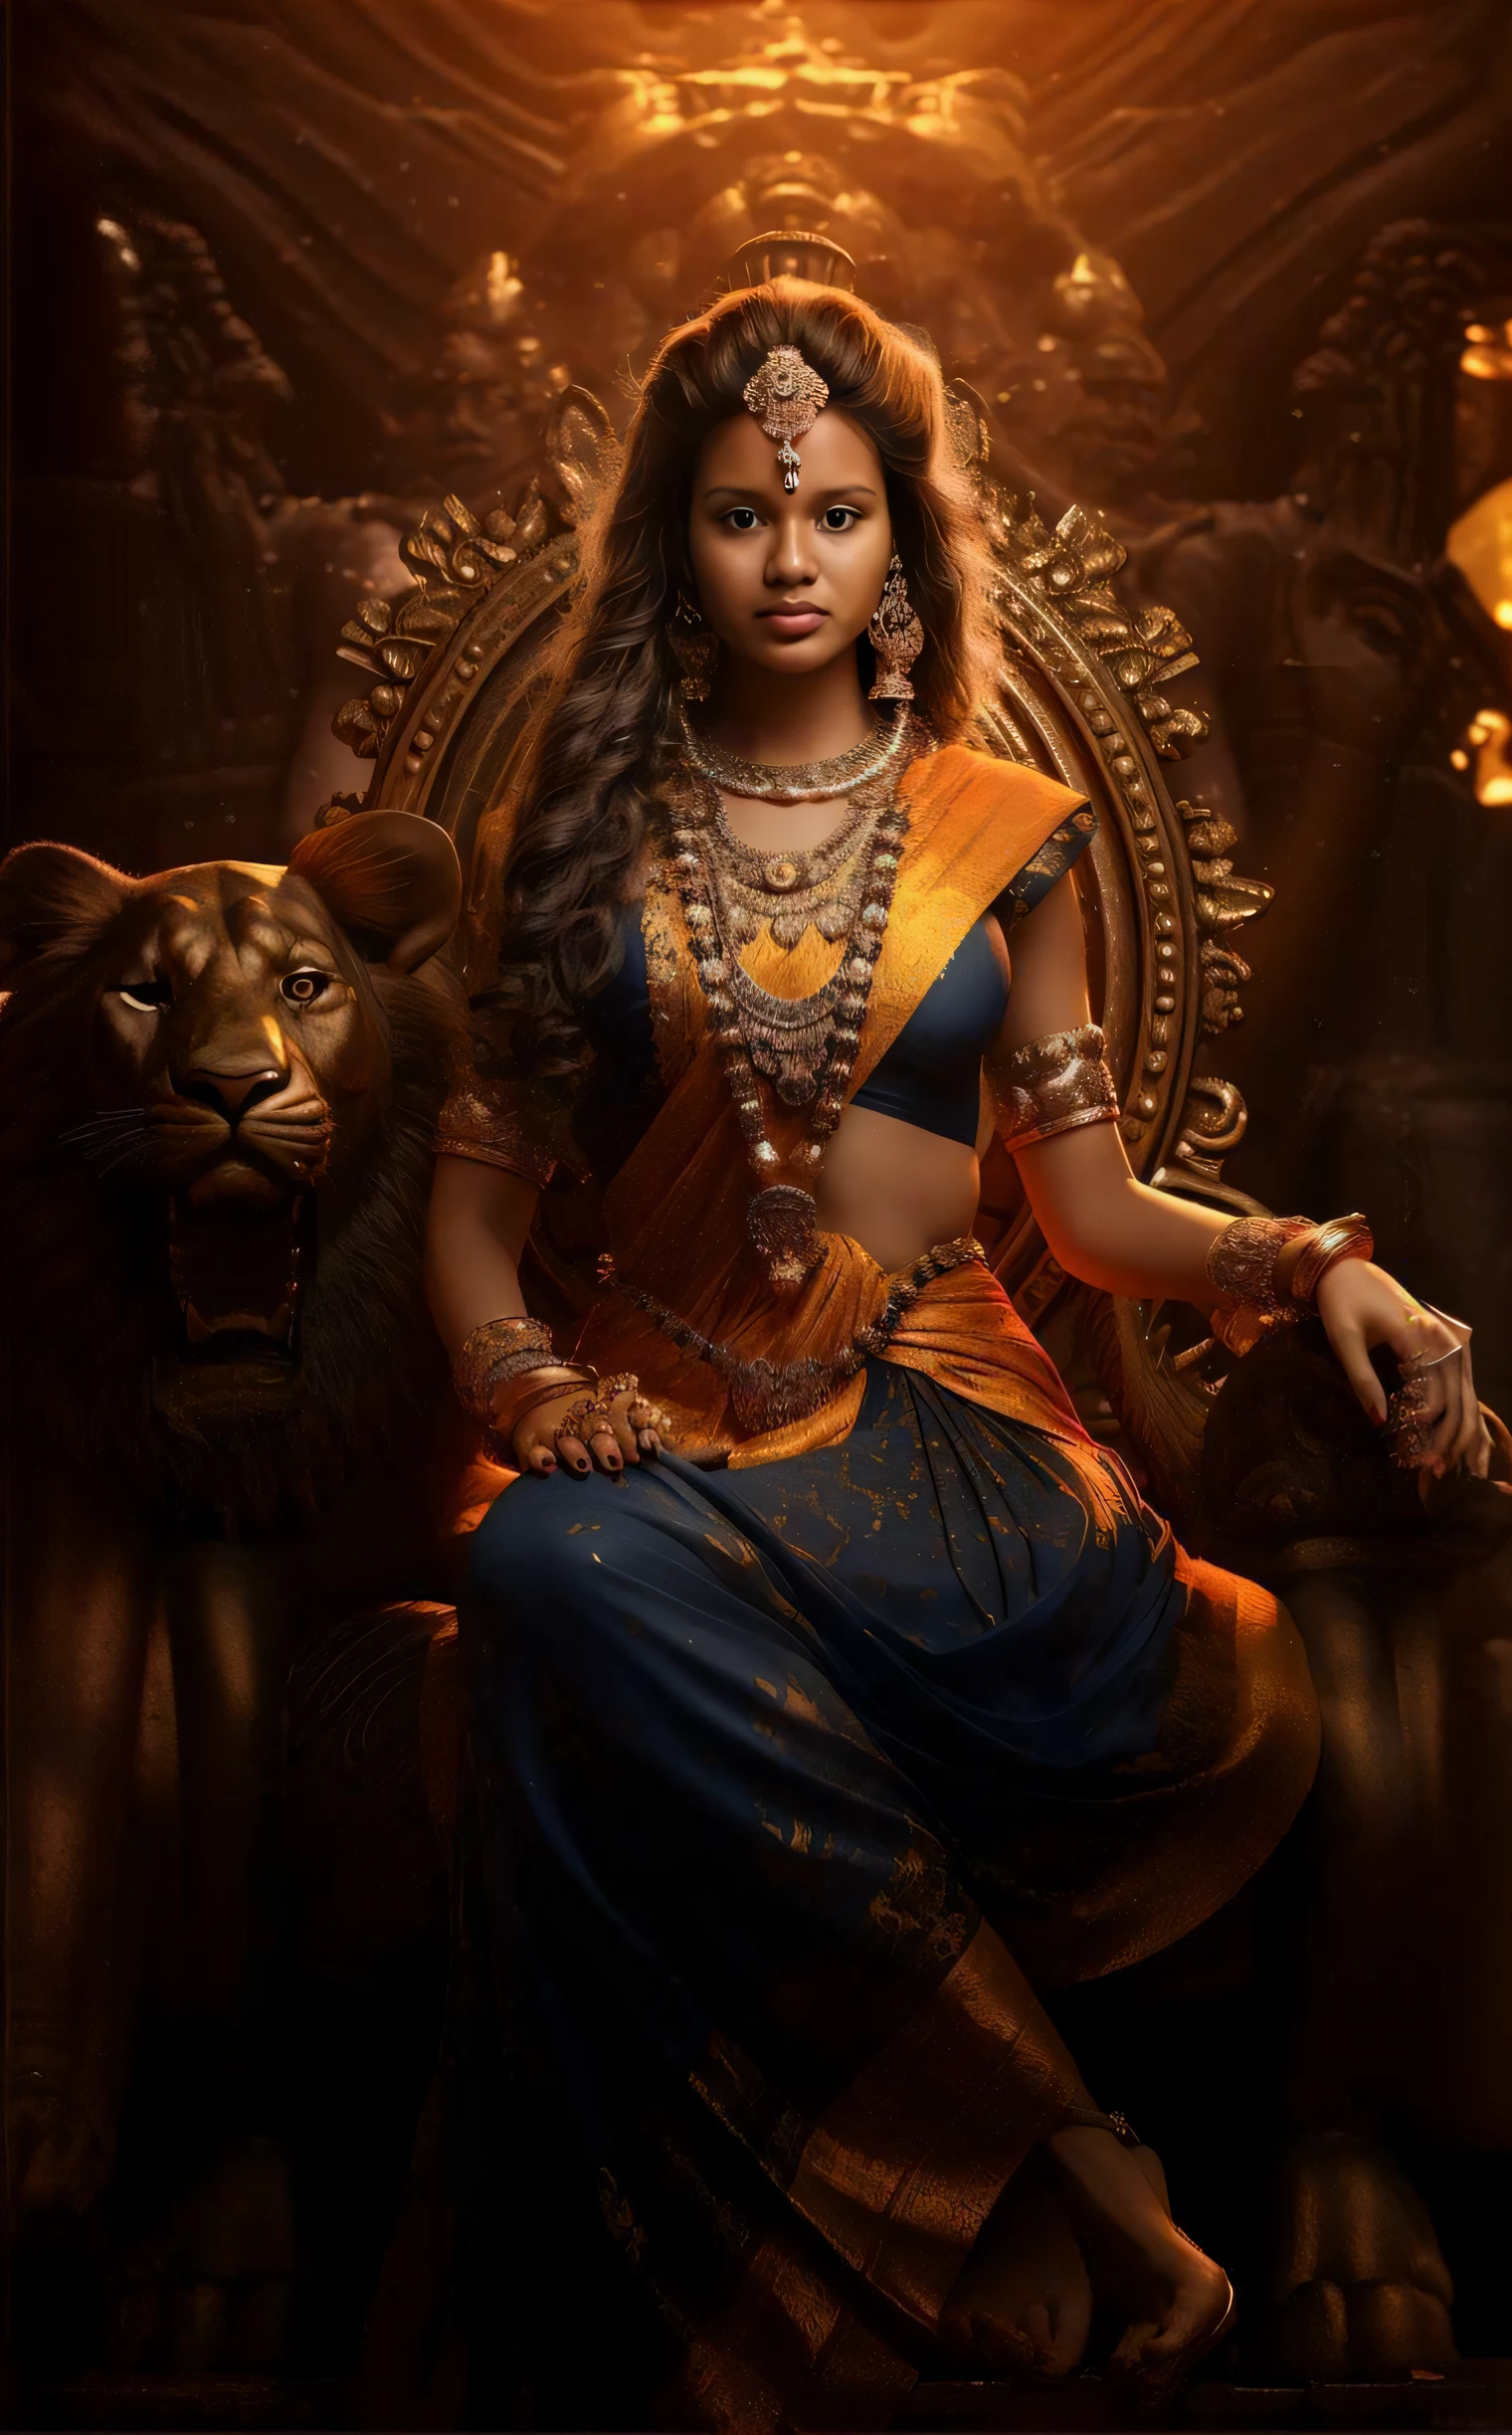 женщина, сидящая на троне, за спиной лев, кинематографическая богиня выстрела, великолепная богиня Льва, Кинематографическая богиня крупным планом, Кинематографический снимок тела богини, индийская богиня, царственная поза, рекламный кадр из фильма, Потрясающий портрет богини, красивая богиня, рекламный фильм еще, красивая женщина-воин, кадр из фантастического фильма, потрясающая женщина, прекрасная императрица фэнтези